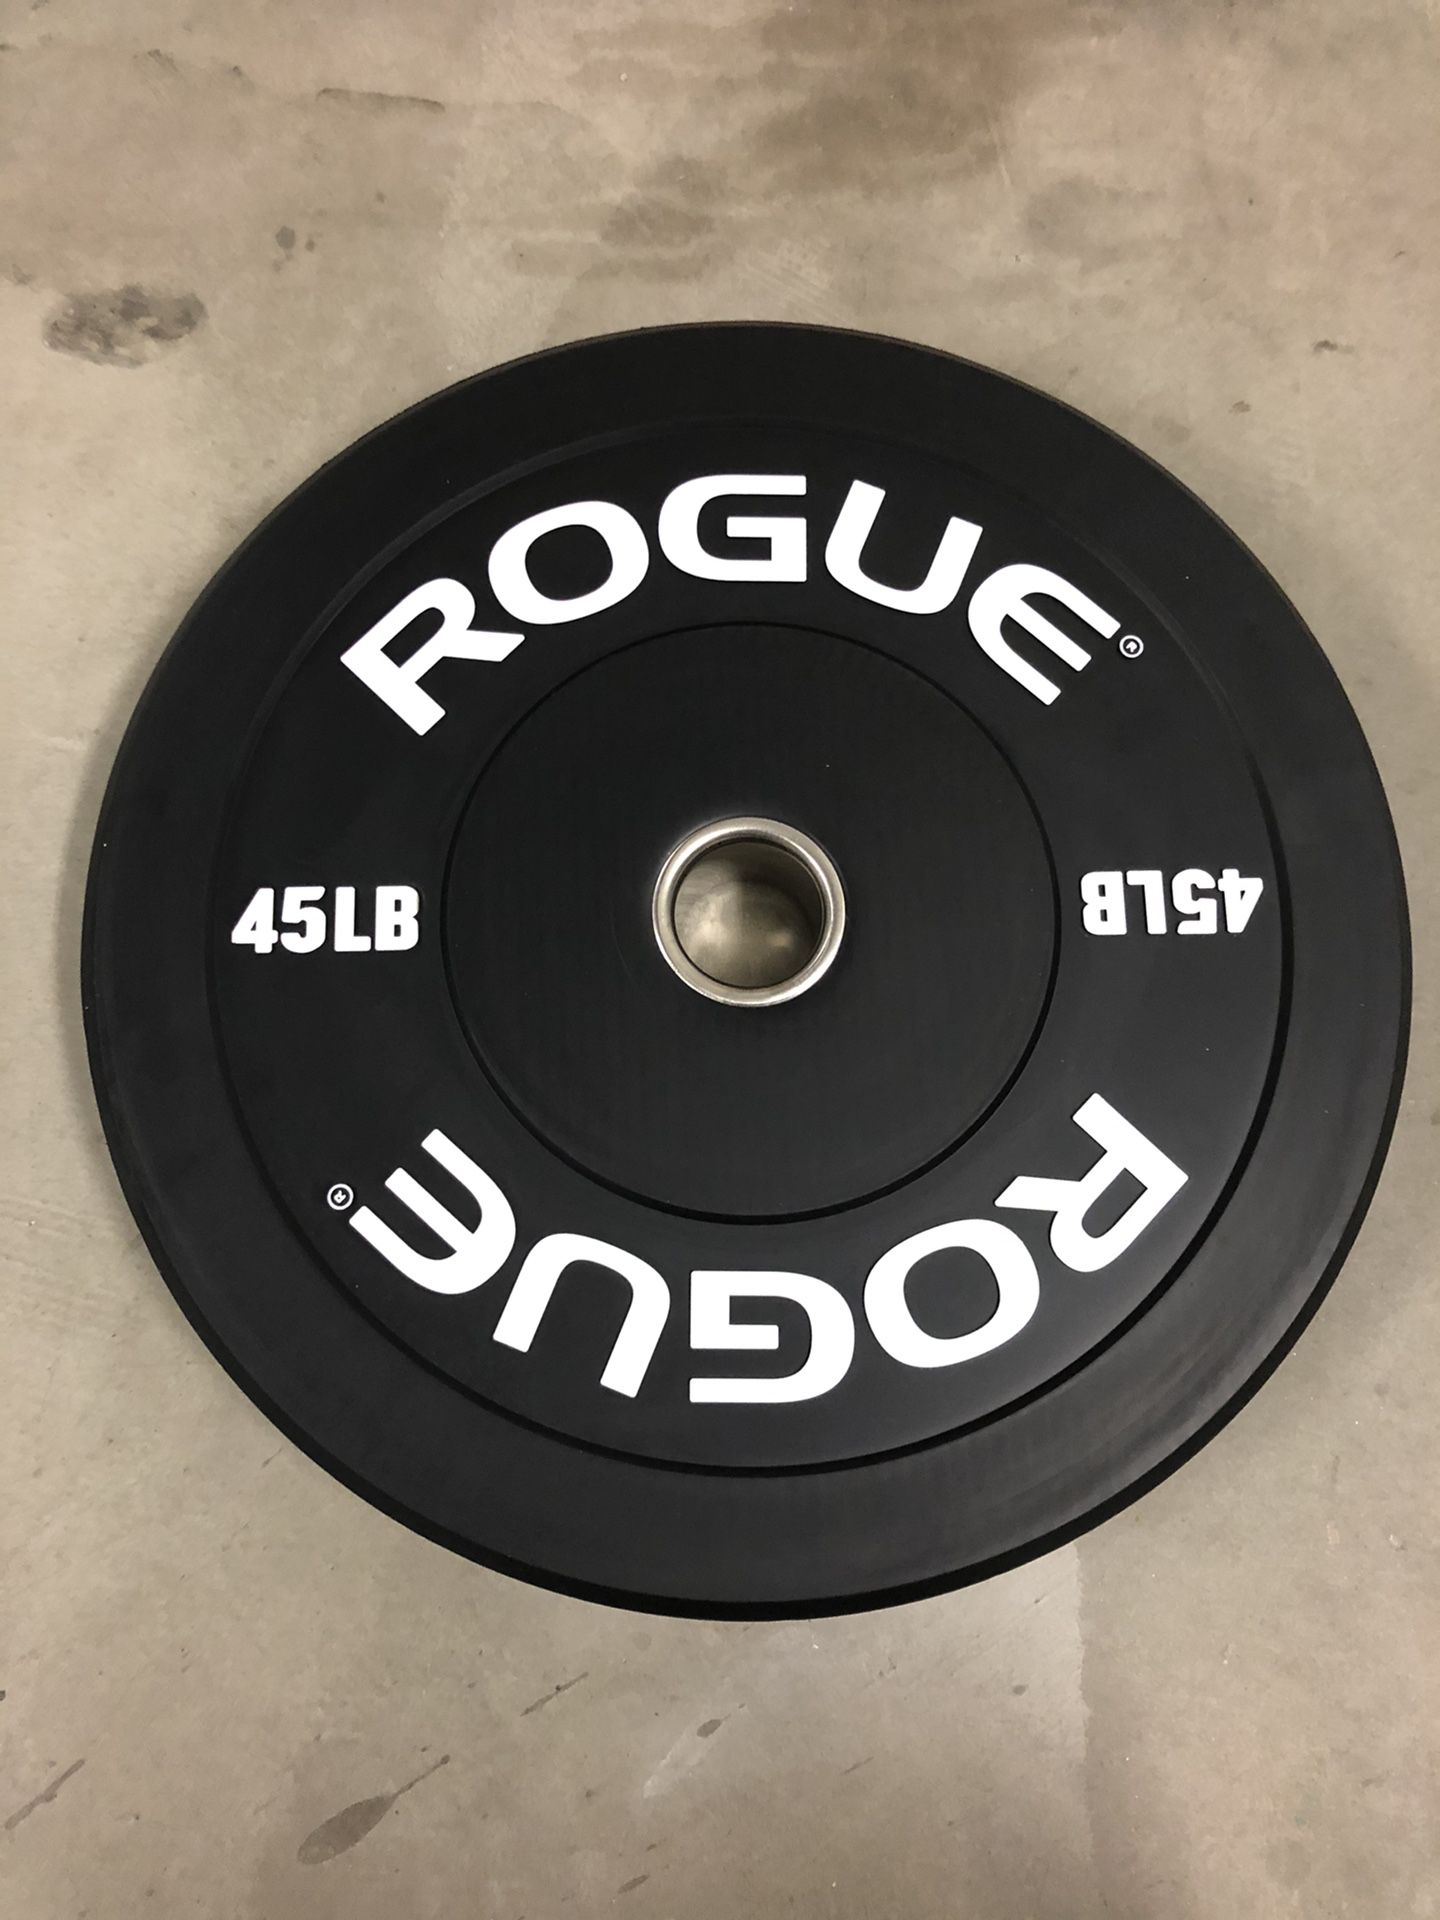 Rogue Echo Bumper Plates (2) 45lb Pair NEW